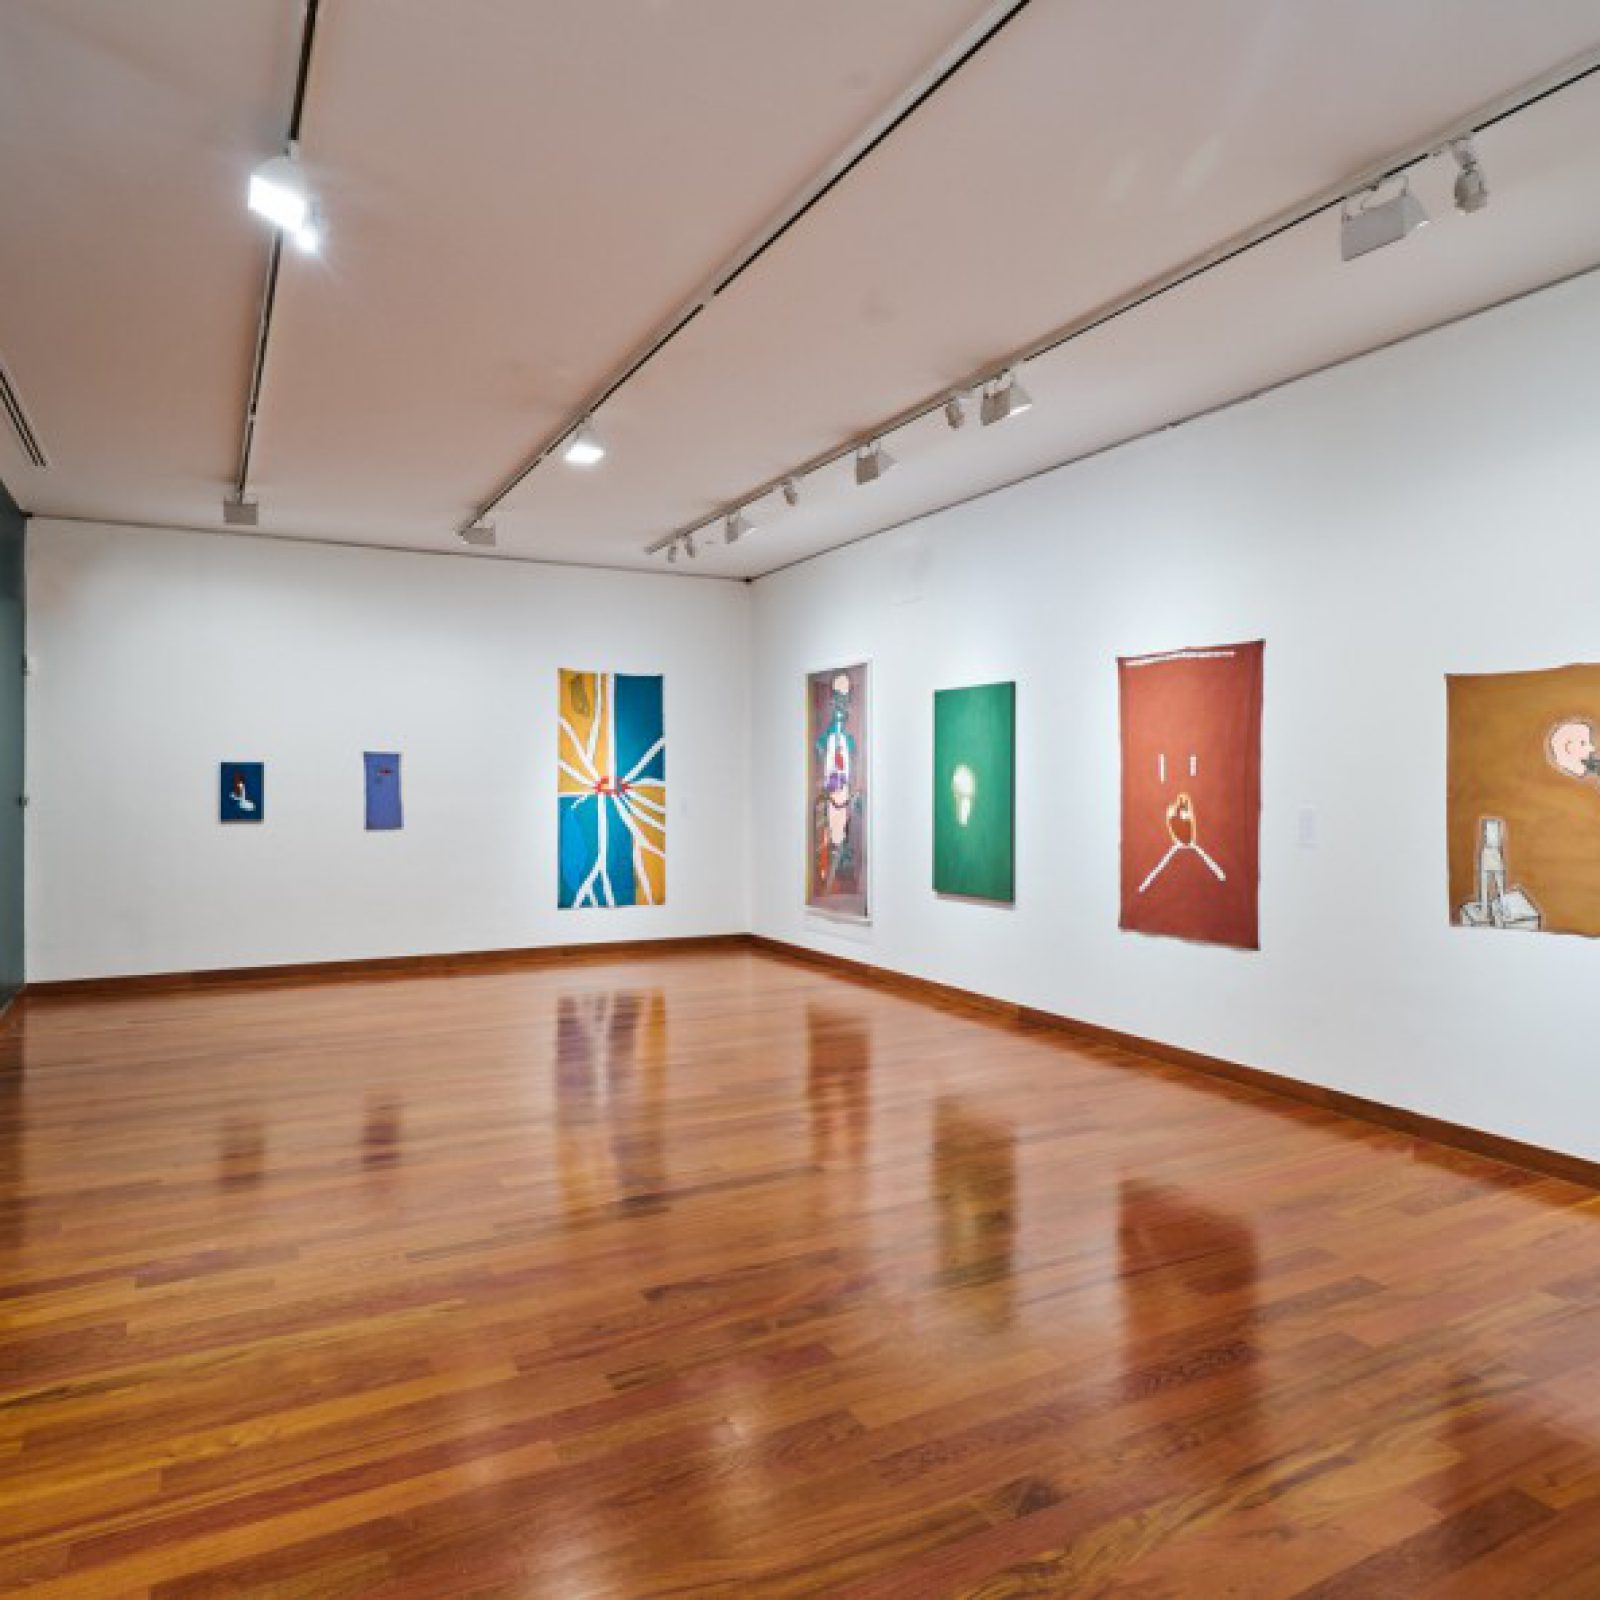 Vista de la exposición "José Leonilson: Empty Man", en Americas Society, Nueva York, 2017. Foto: Beatriz Meseguer. Cortesía: Americas Society